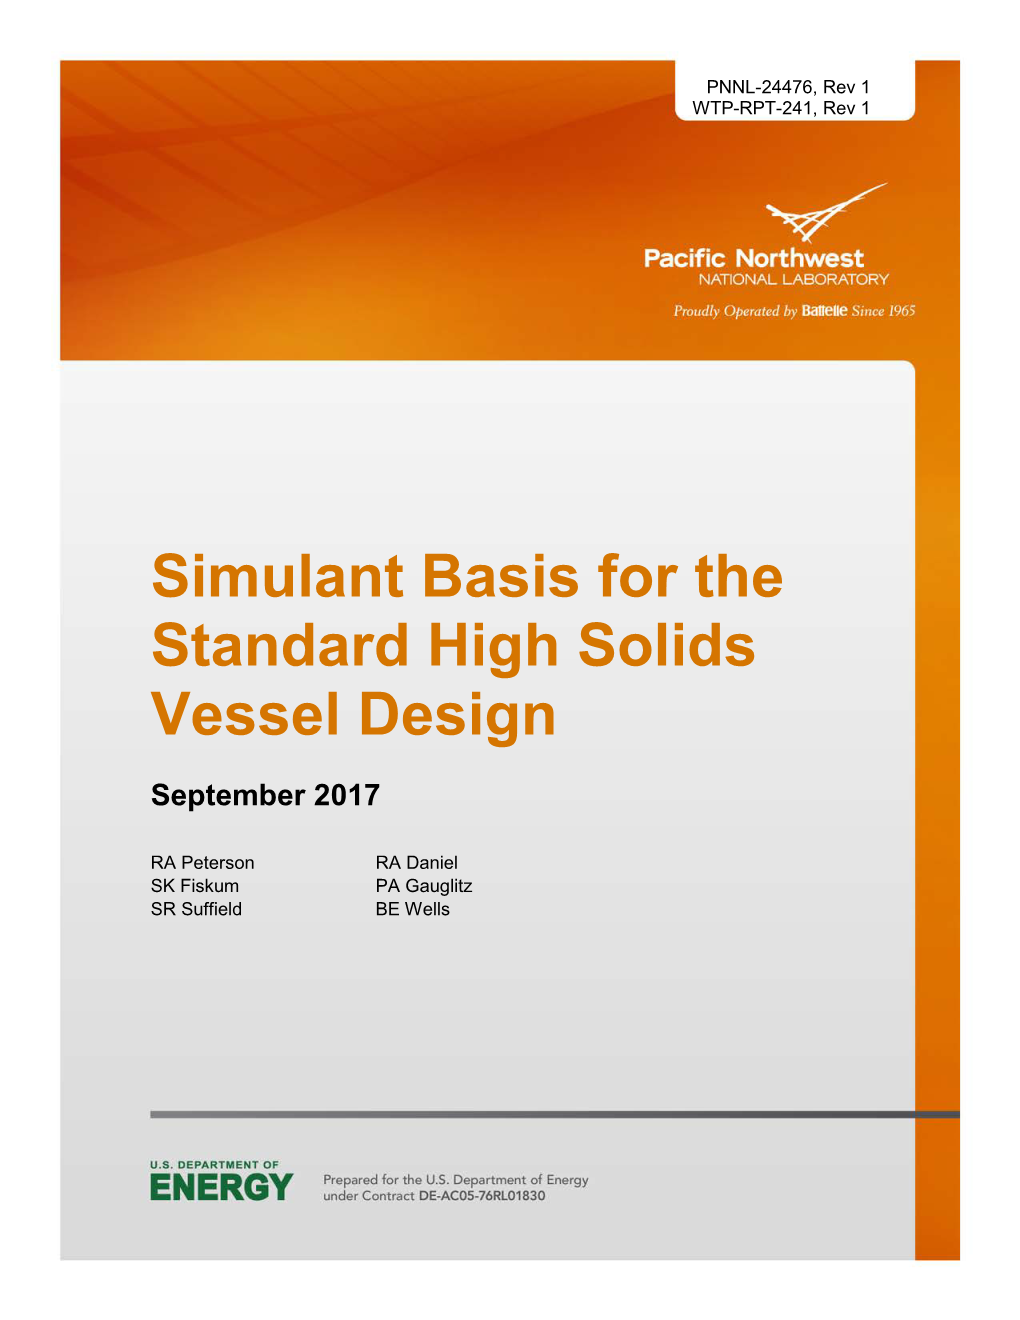 Simulant Basis for the Standard High Solids Vessel Design September 2017